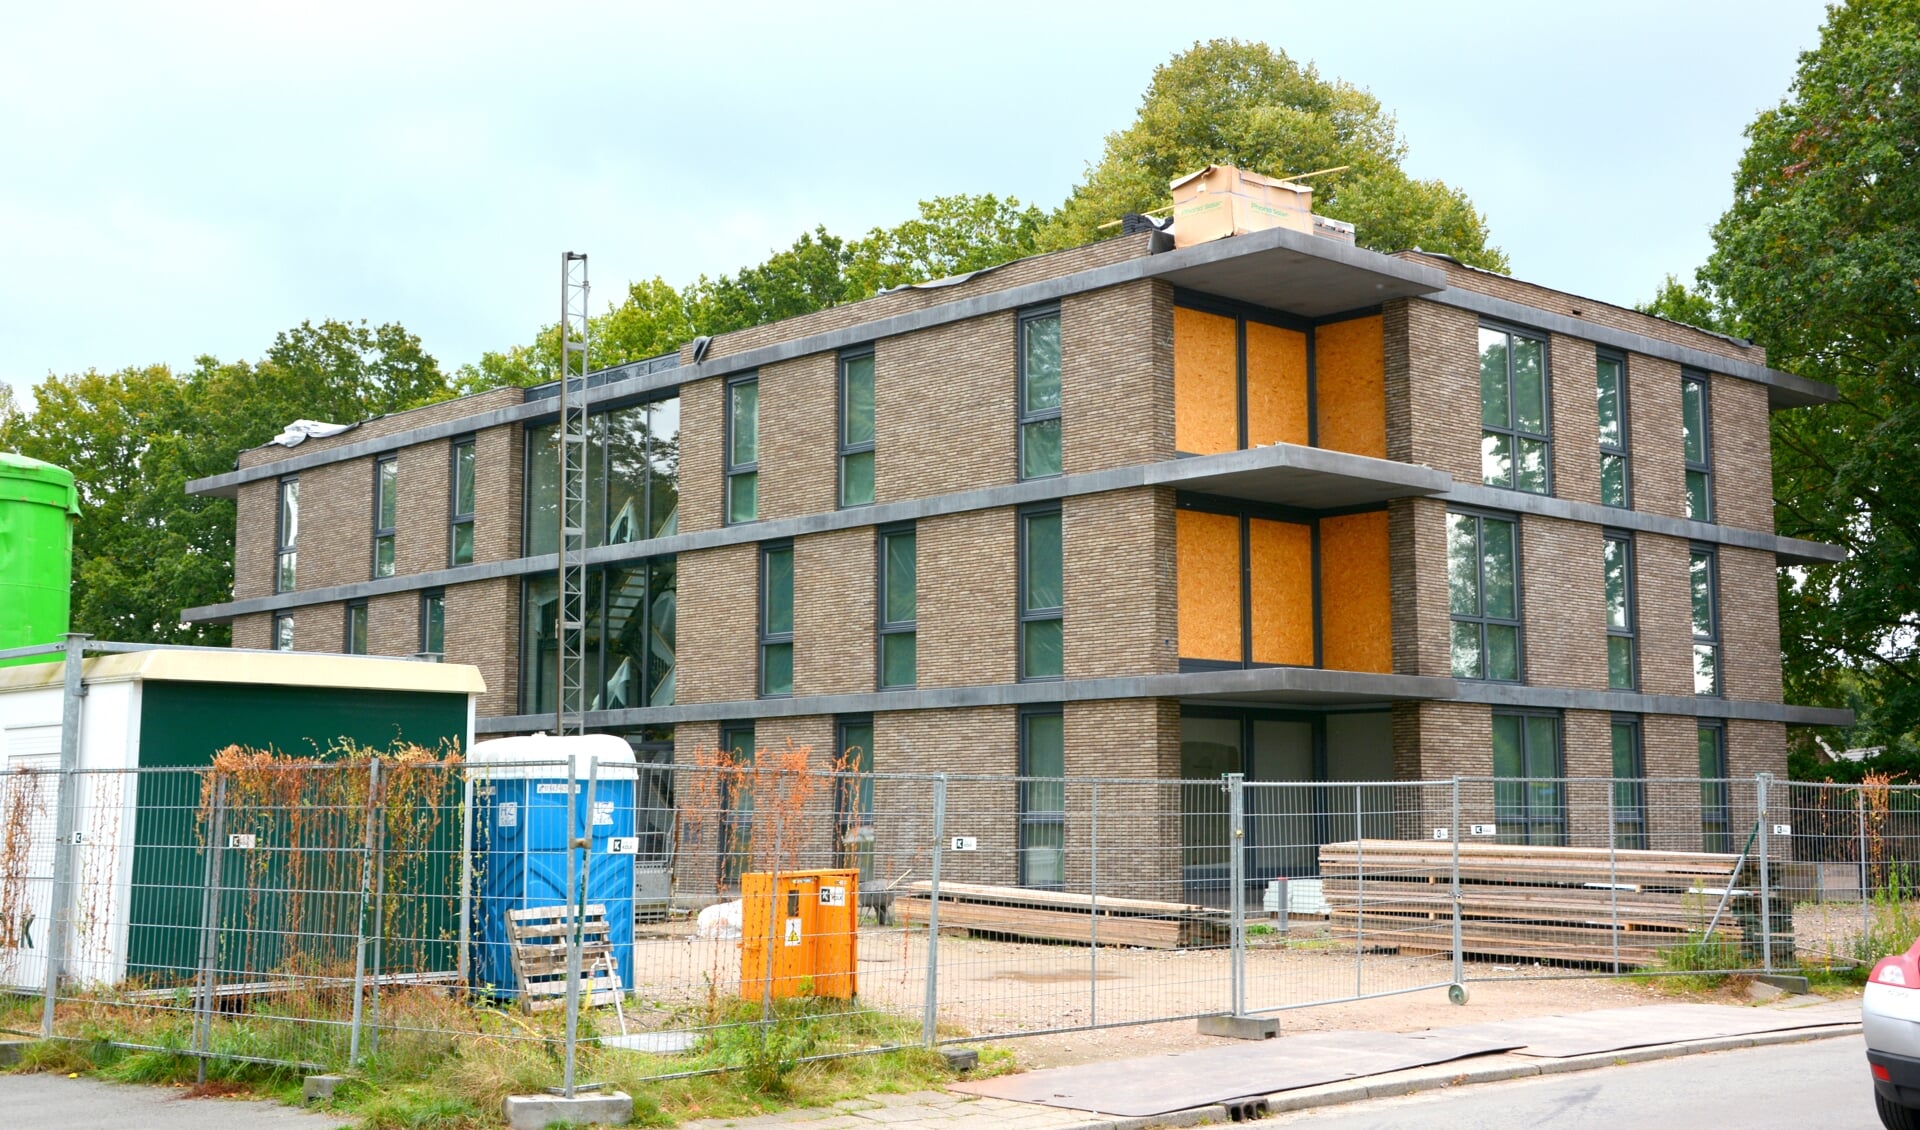 Het nieuwe appartementencomplex De Harremaat in Voorthuizen. Woingbouw was een belangrijk onderwerp tijdens de bijeenkomst over de toekomst van het dorp.